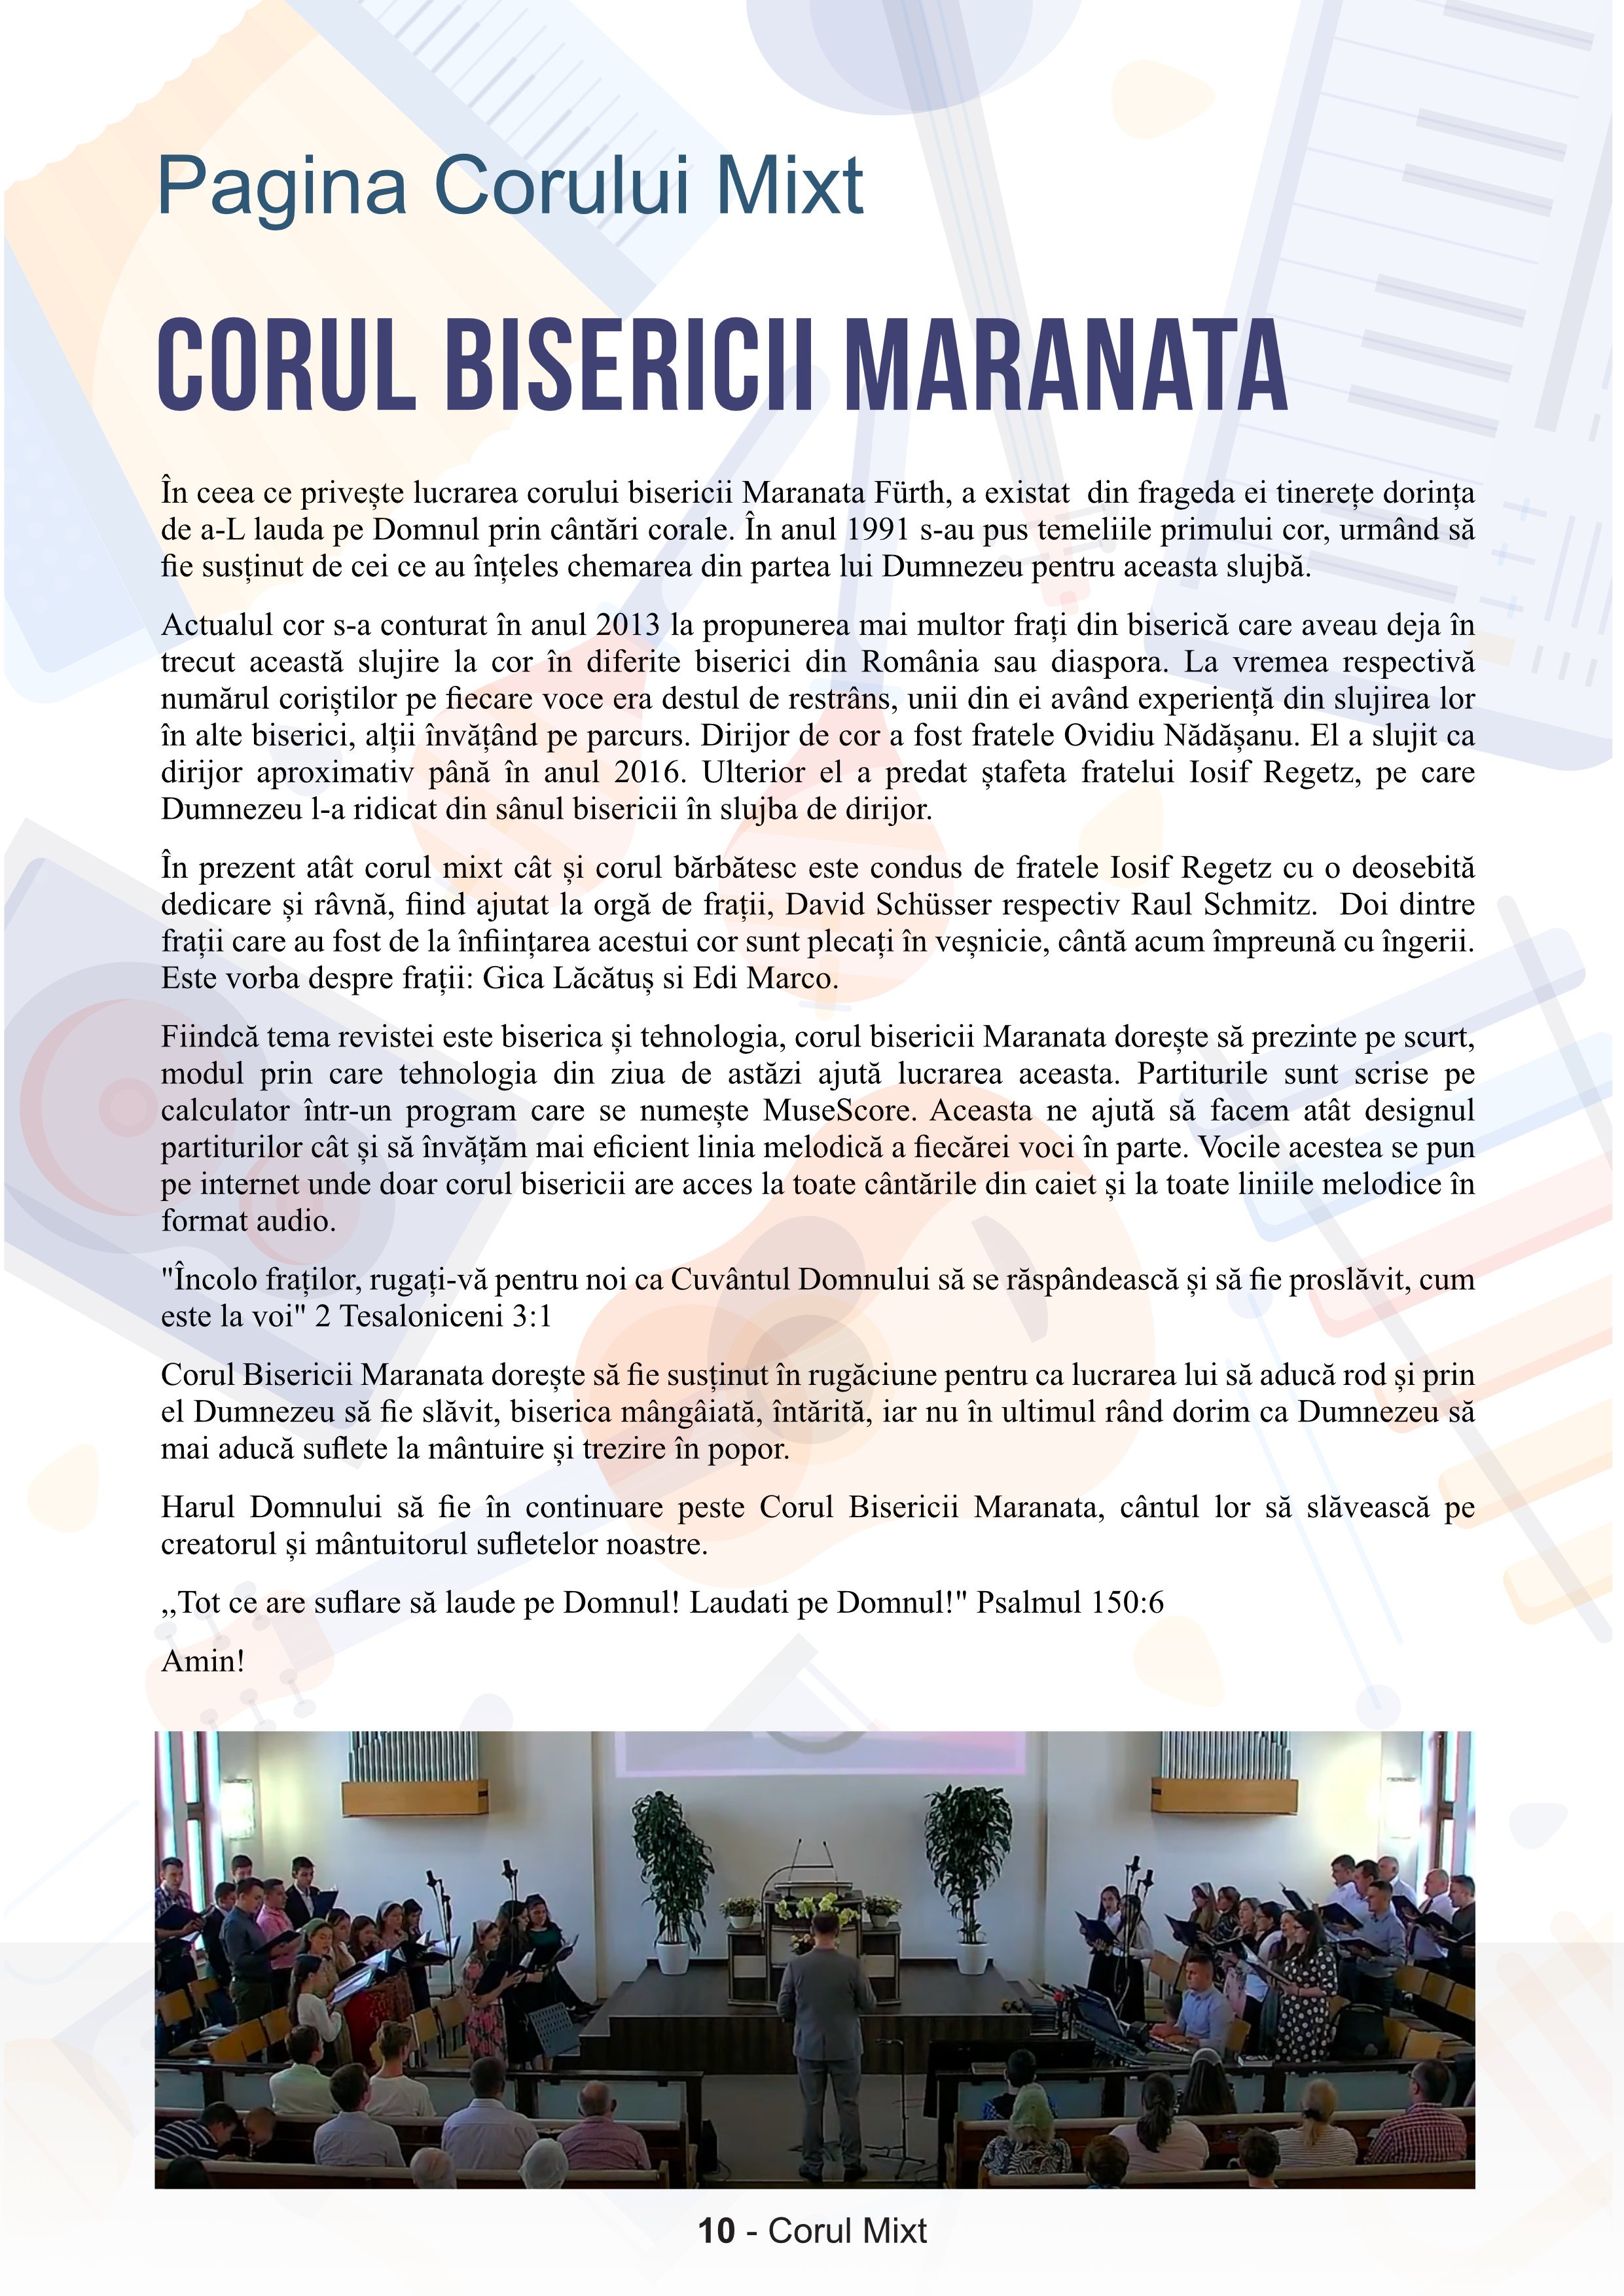 Maranata News - Editia III_10.jpg